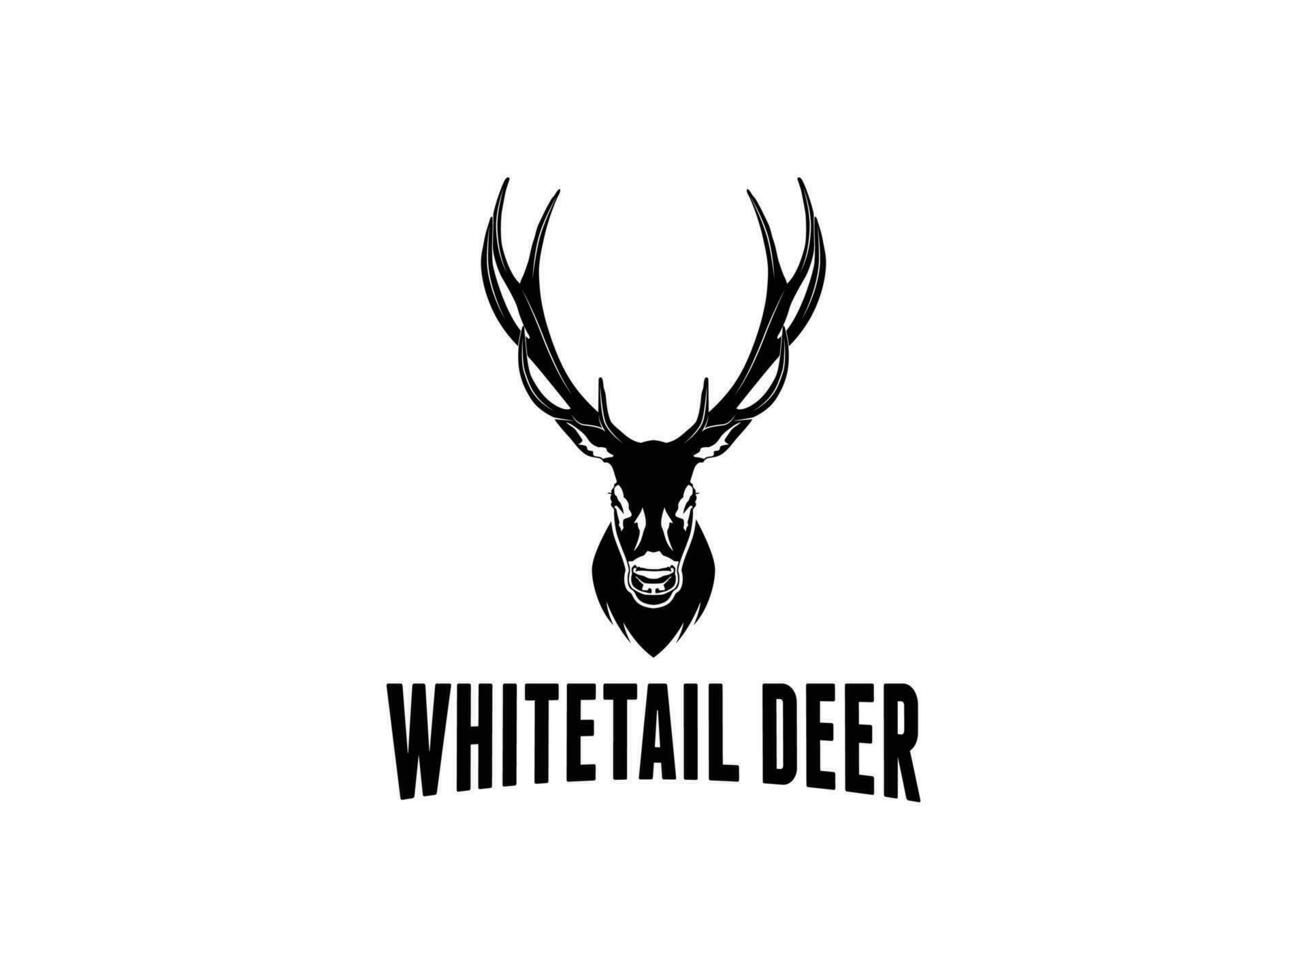 Whitetail deer silhouette vector art hunting logo